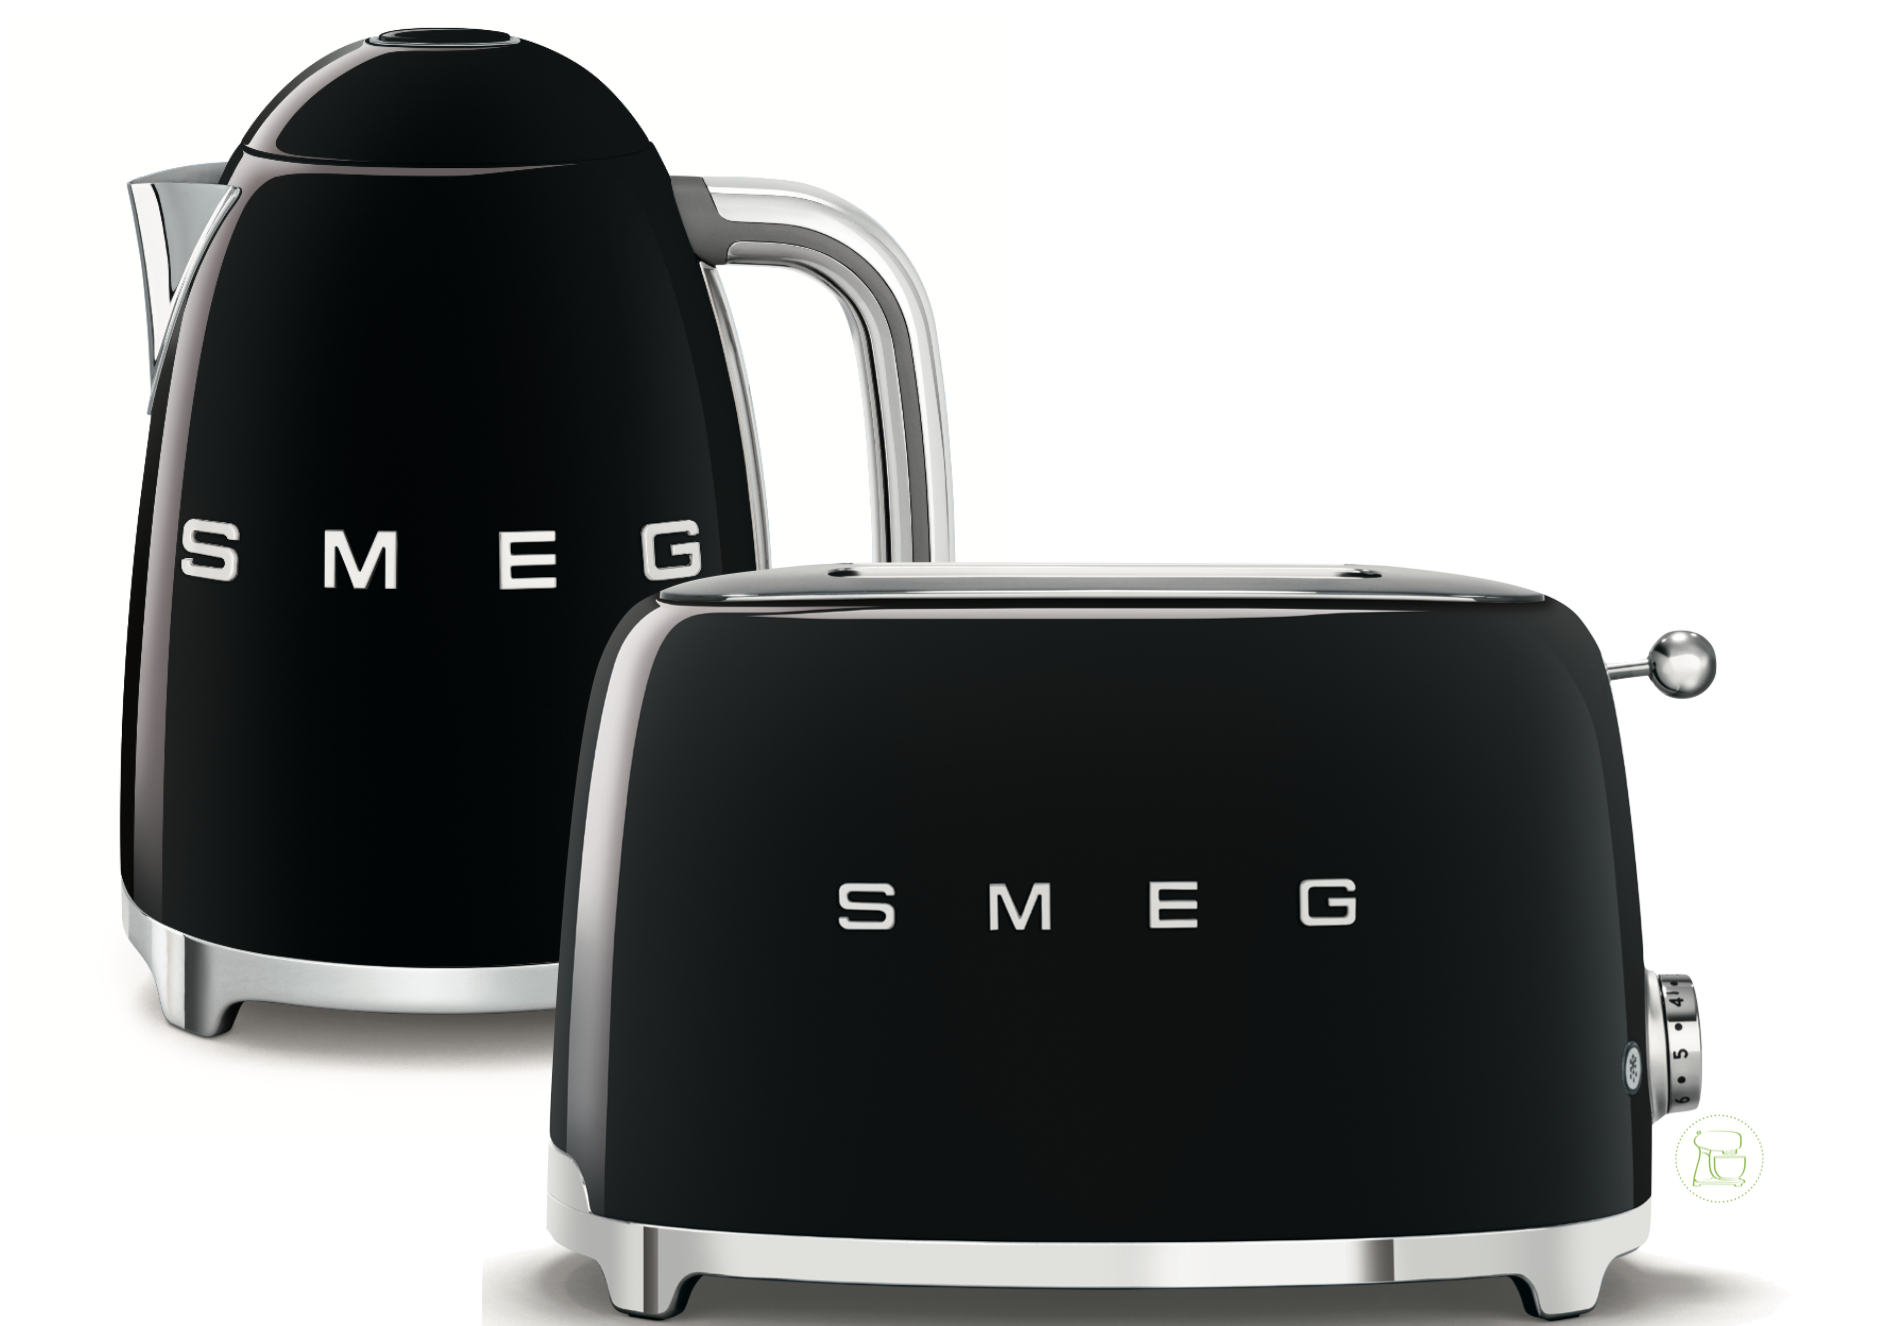 SMEG Wasserkocher - Toaster Set Schwarz